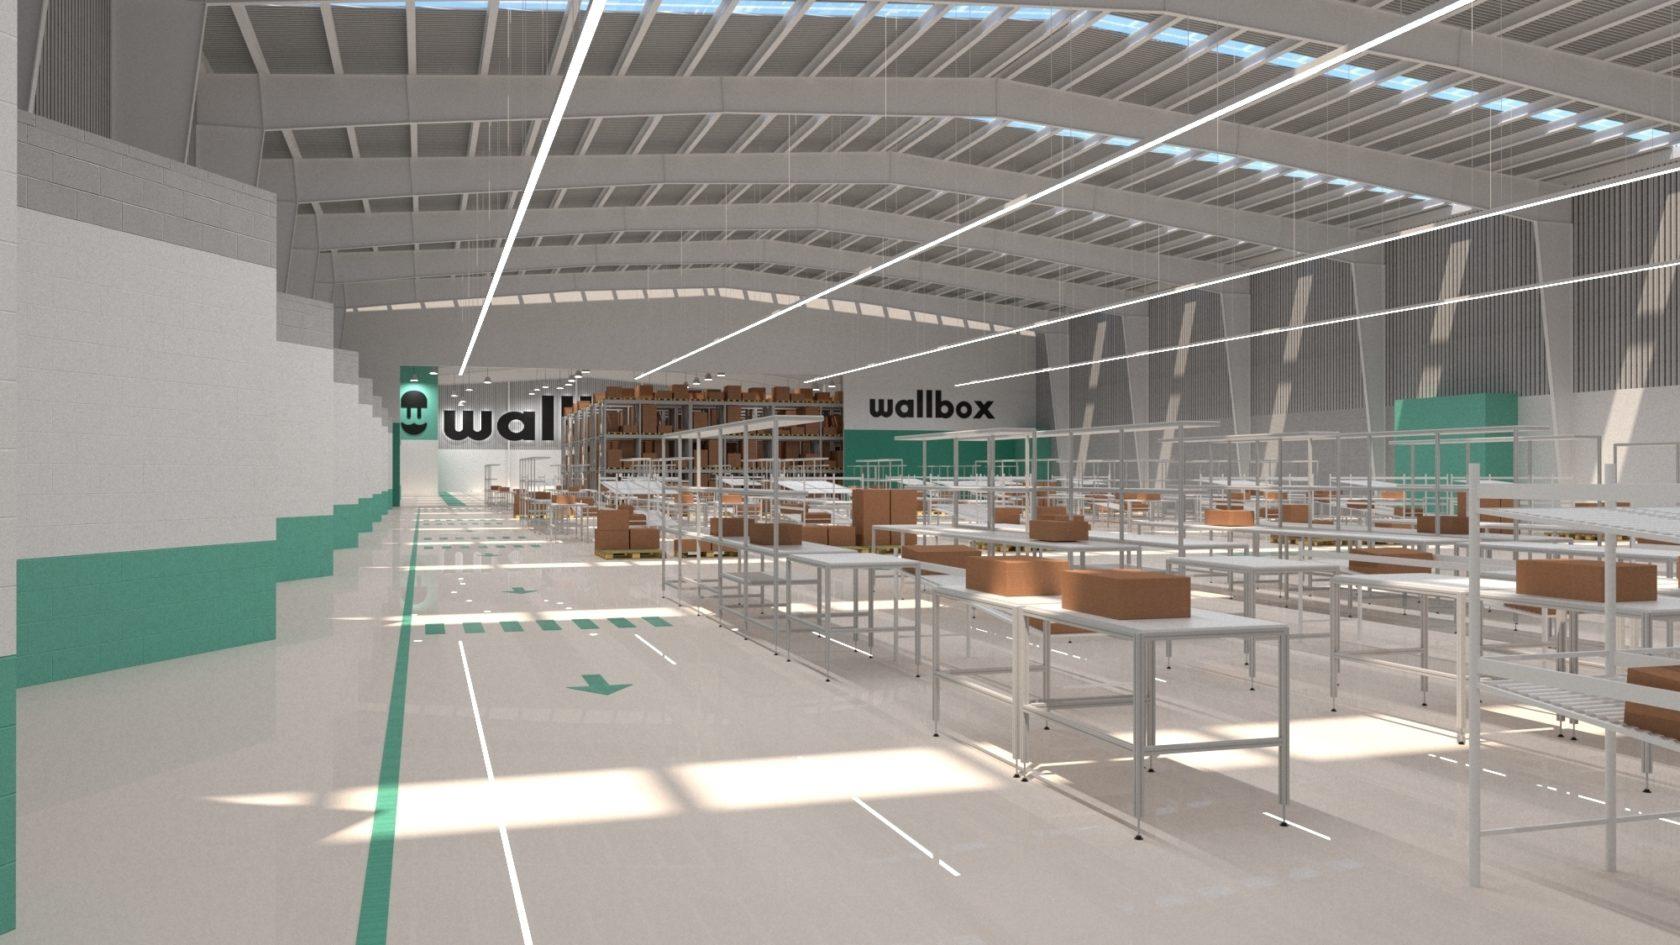 Com um investimento de €9m, A Wallbox irá instalar a sua nova fábrica de produção na Zona Franca de Barcelona